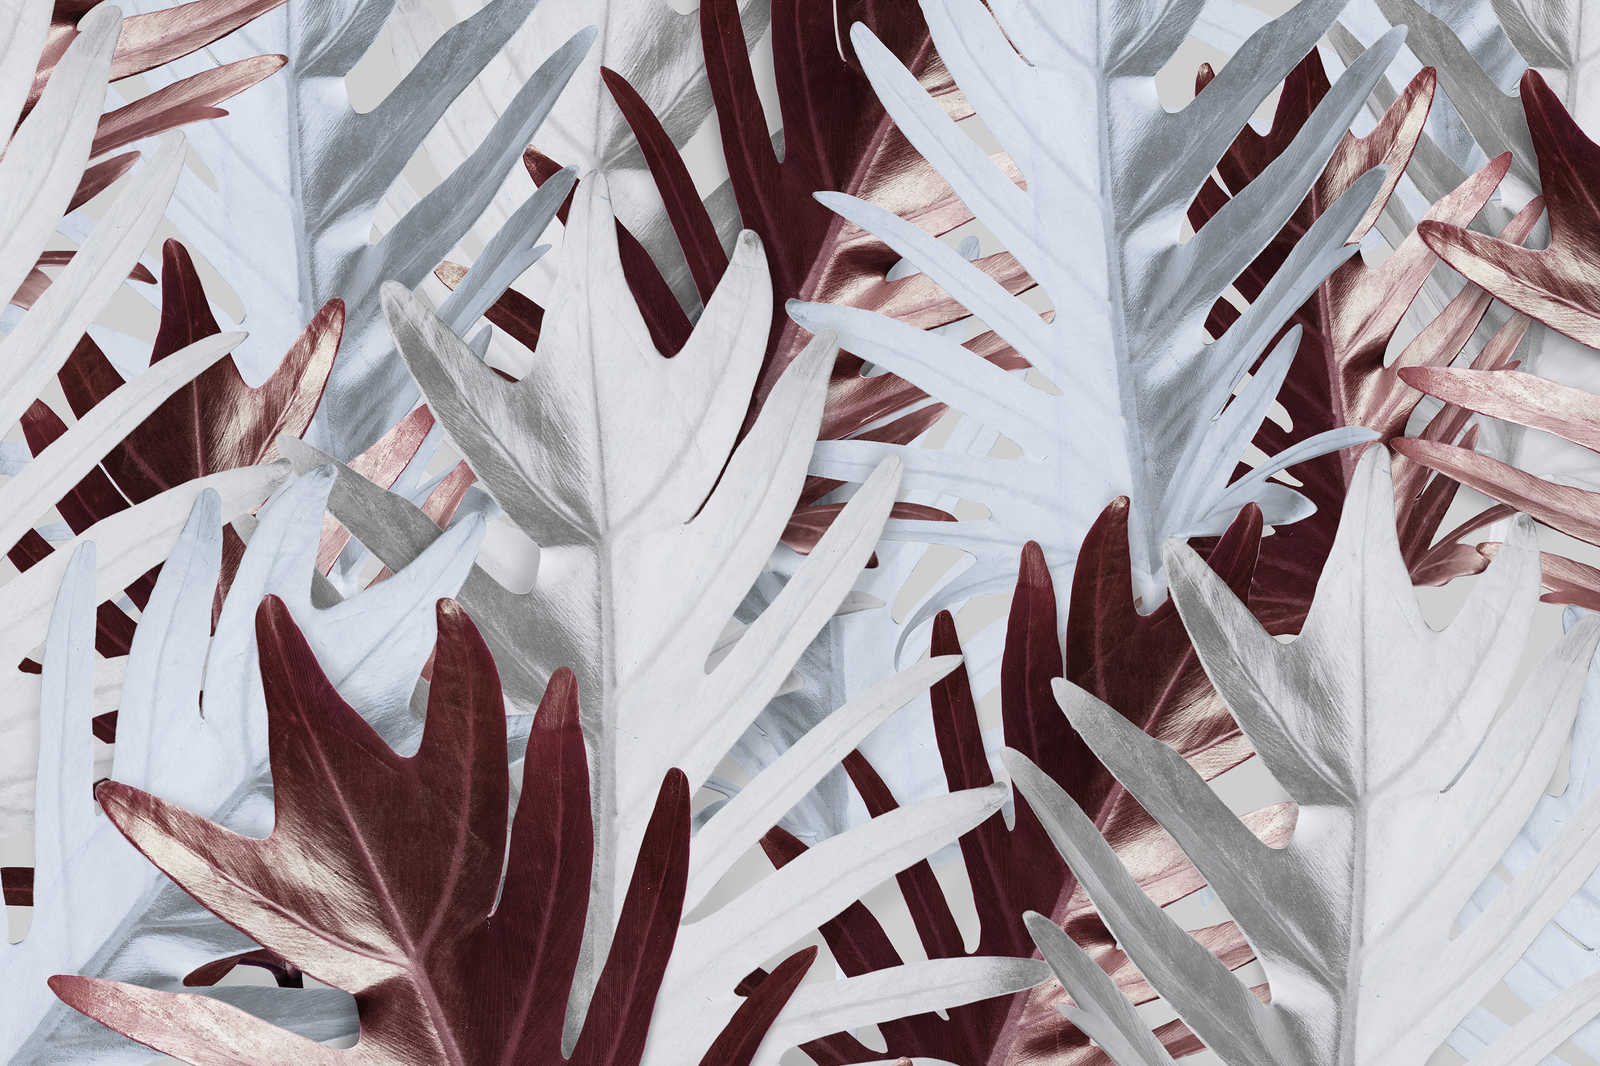             Leinwandbild mit Dschungelblättern in sanften Farbtönen – 0,90 m x 0,60 m
        